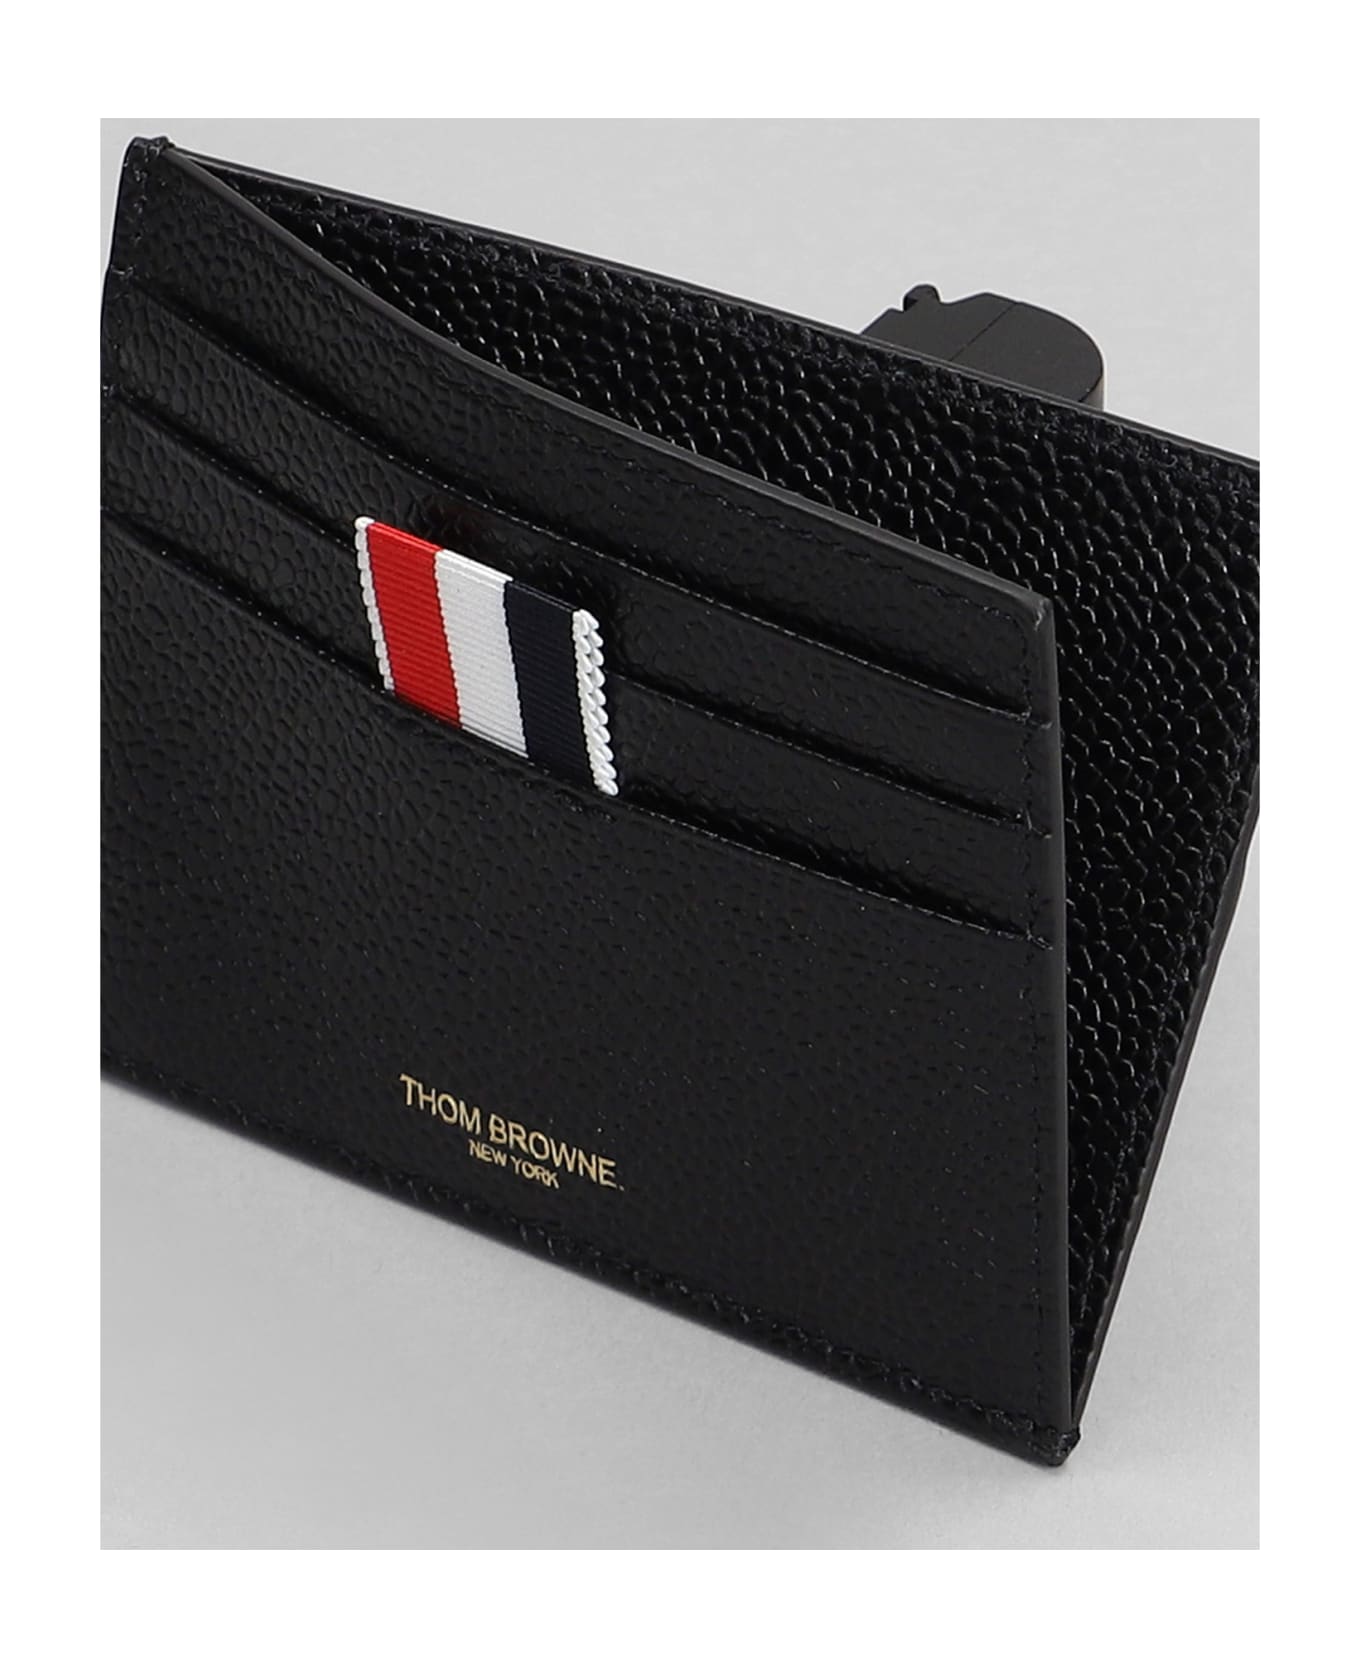 Thom Browne Wallet In Black Leather - black 財布